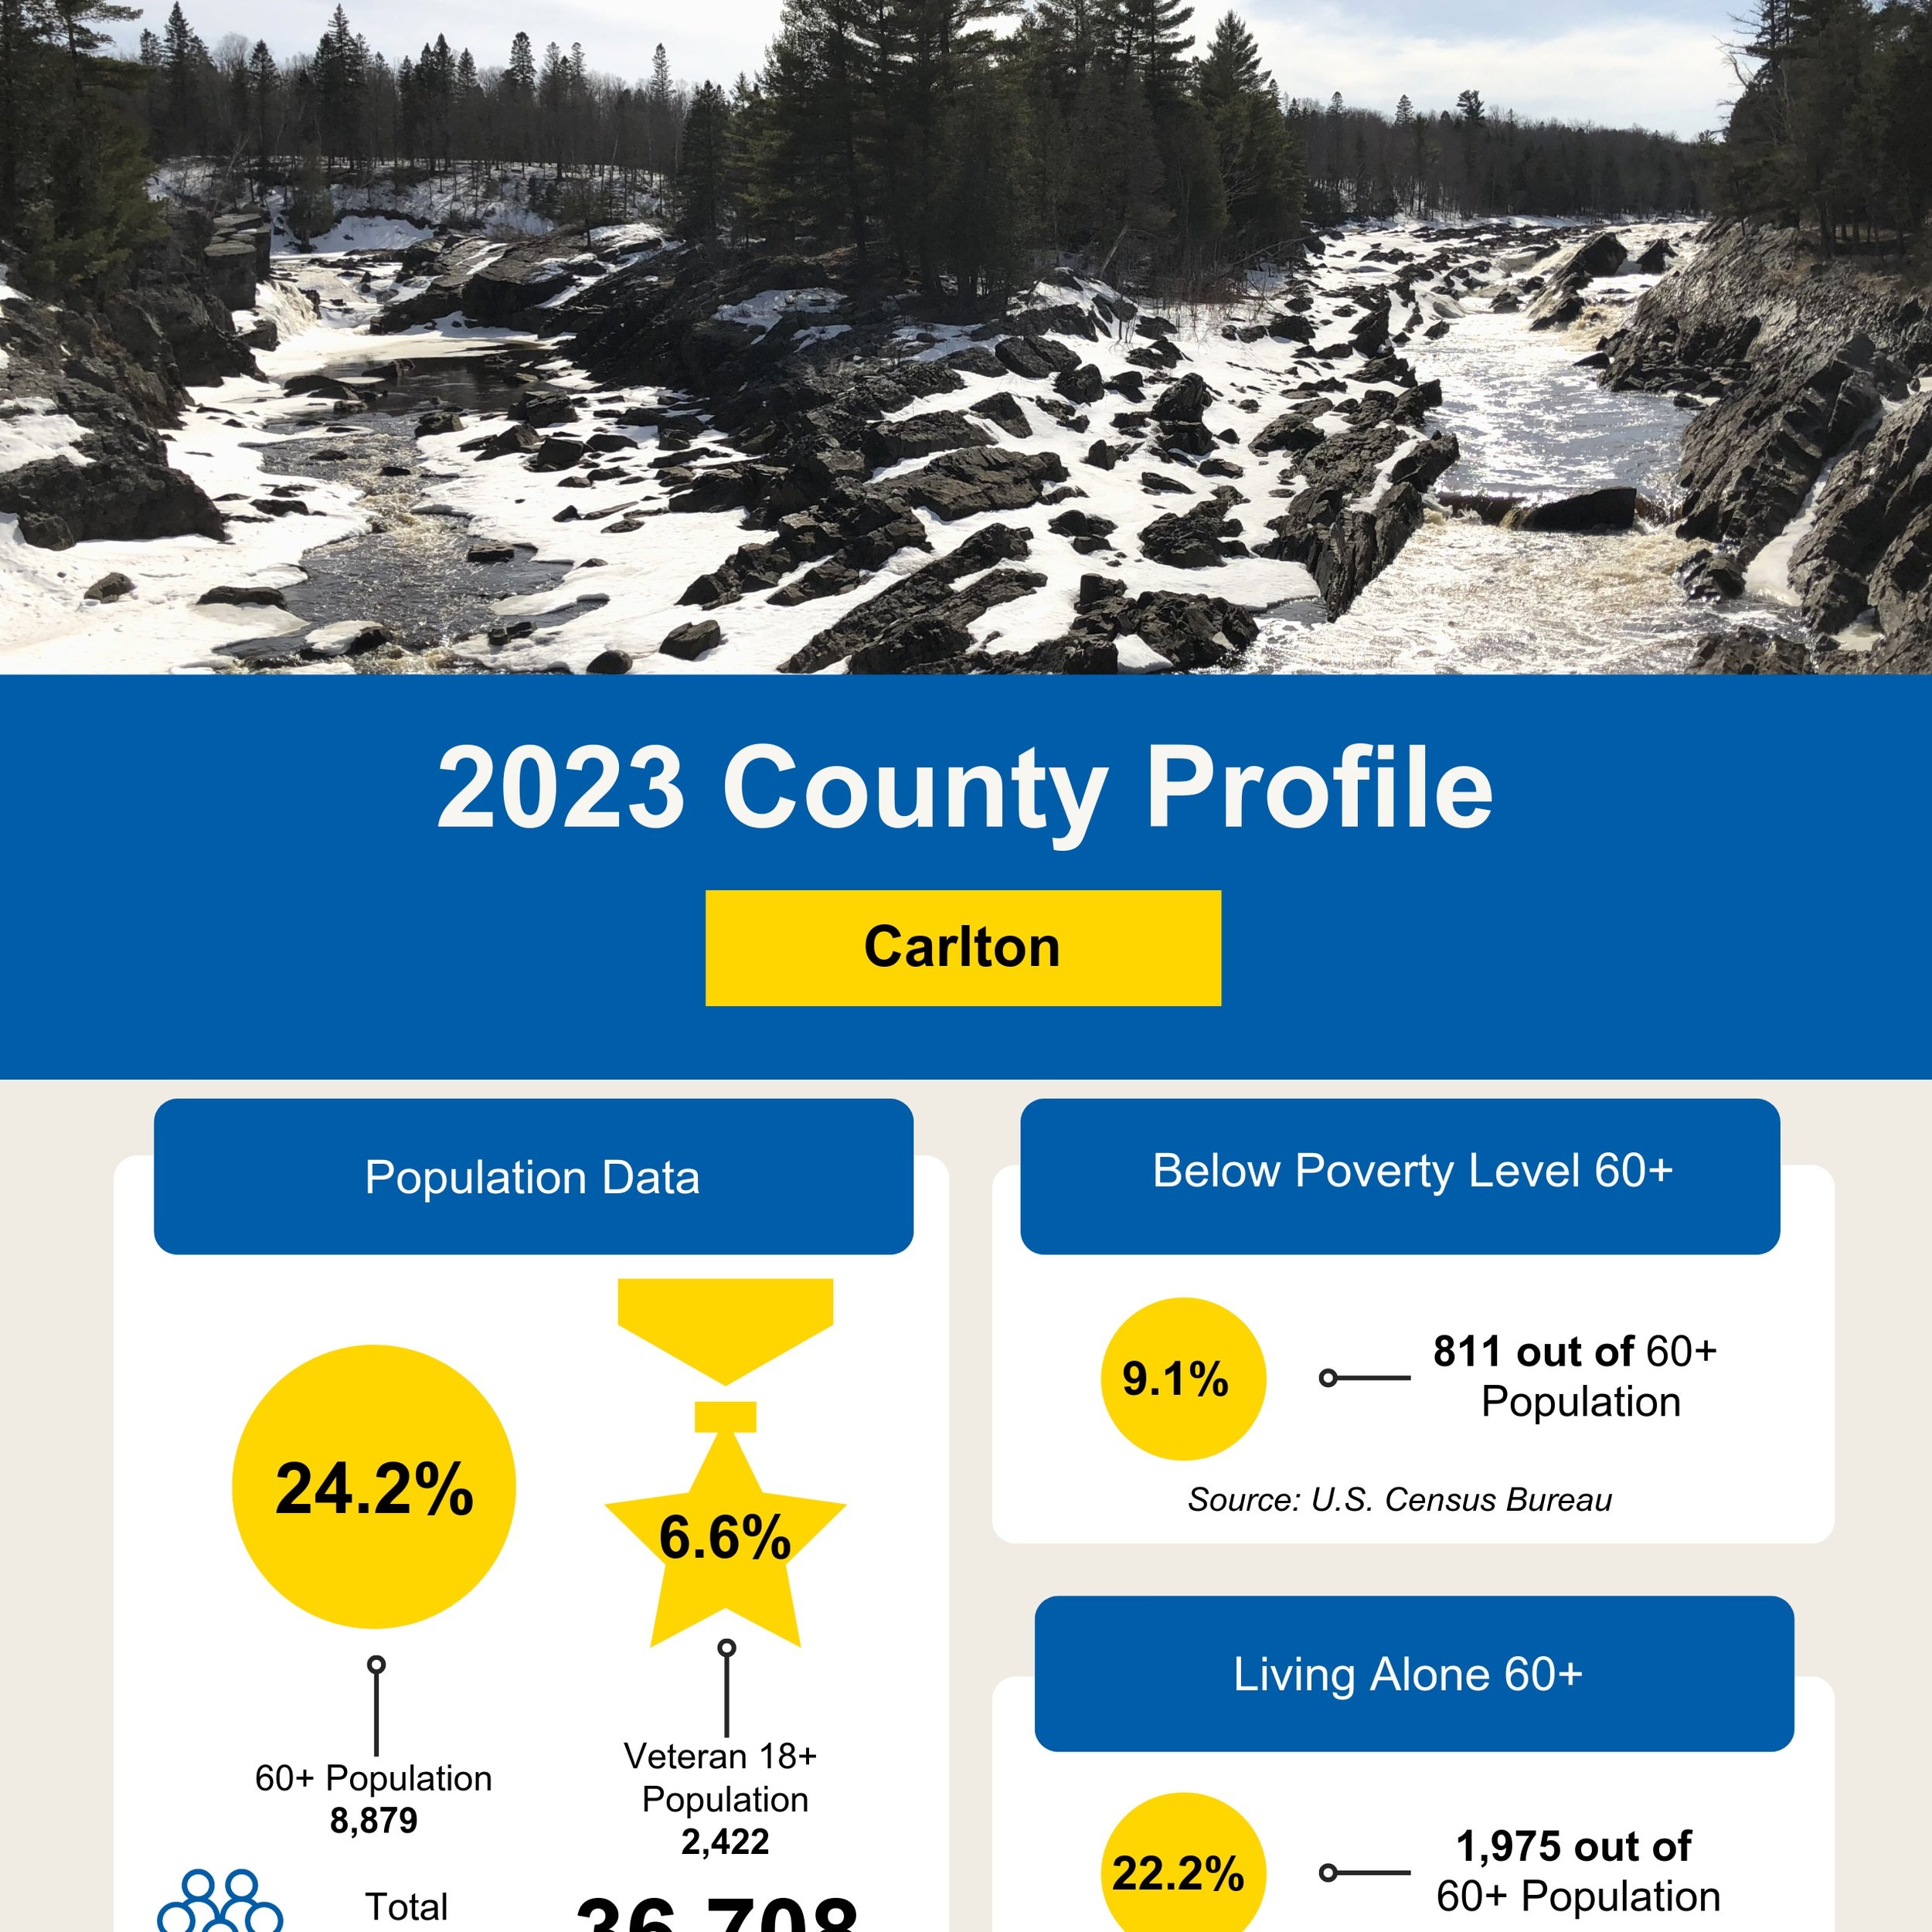 Carlton County Profile